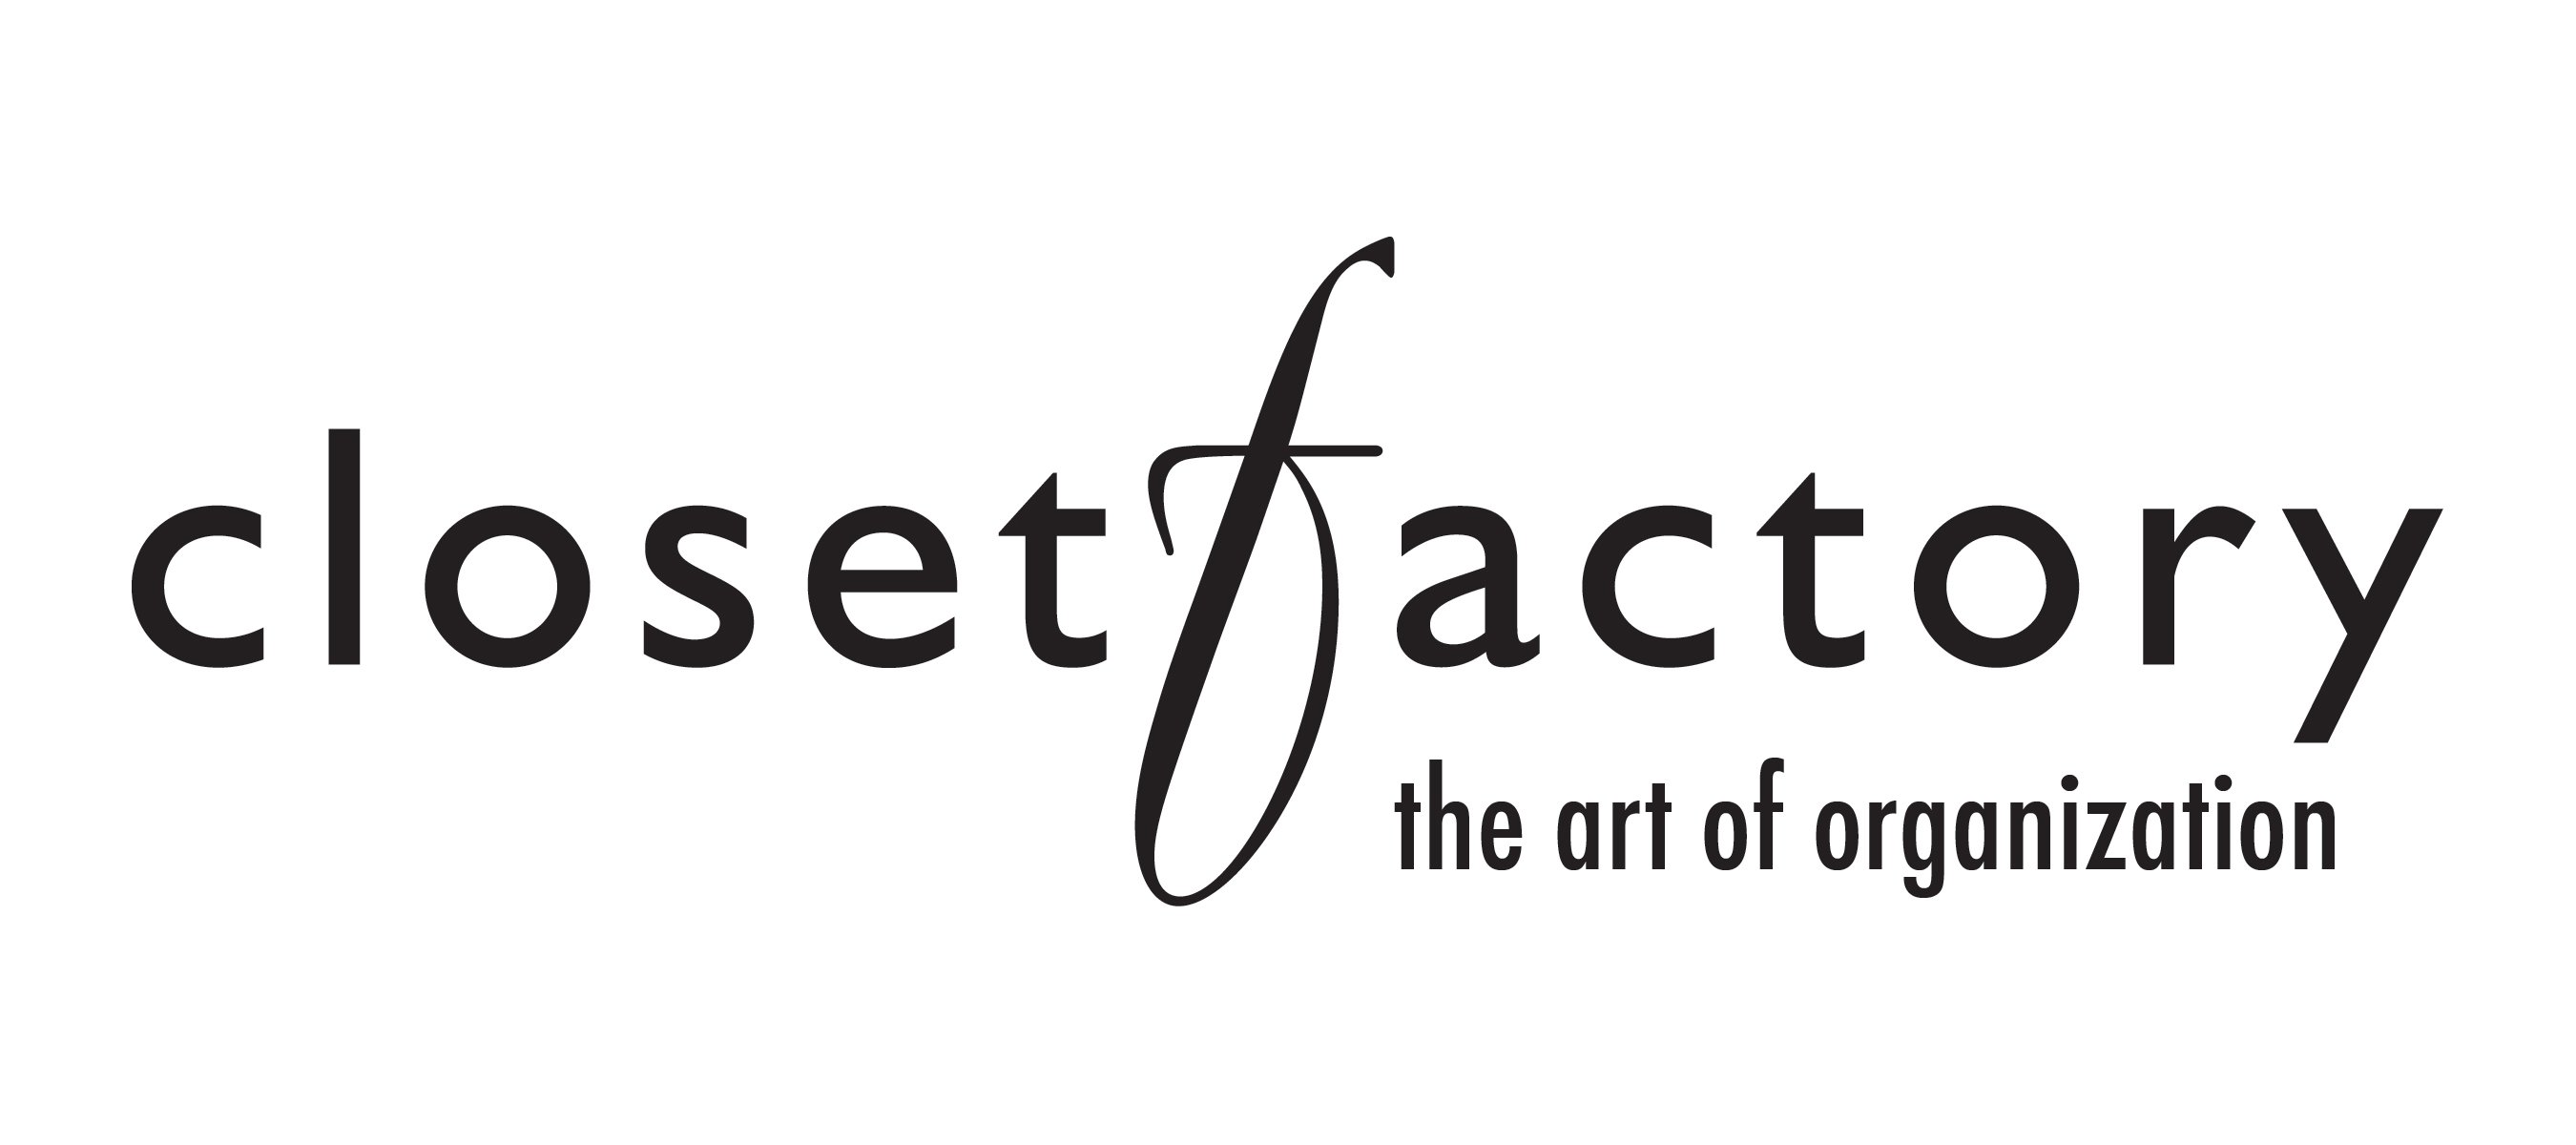 The Closet Factory, Inc. Logo